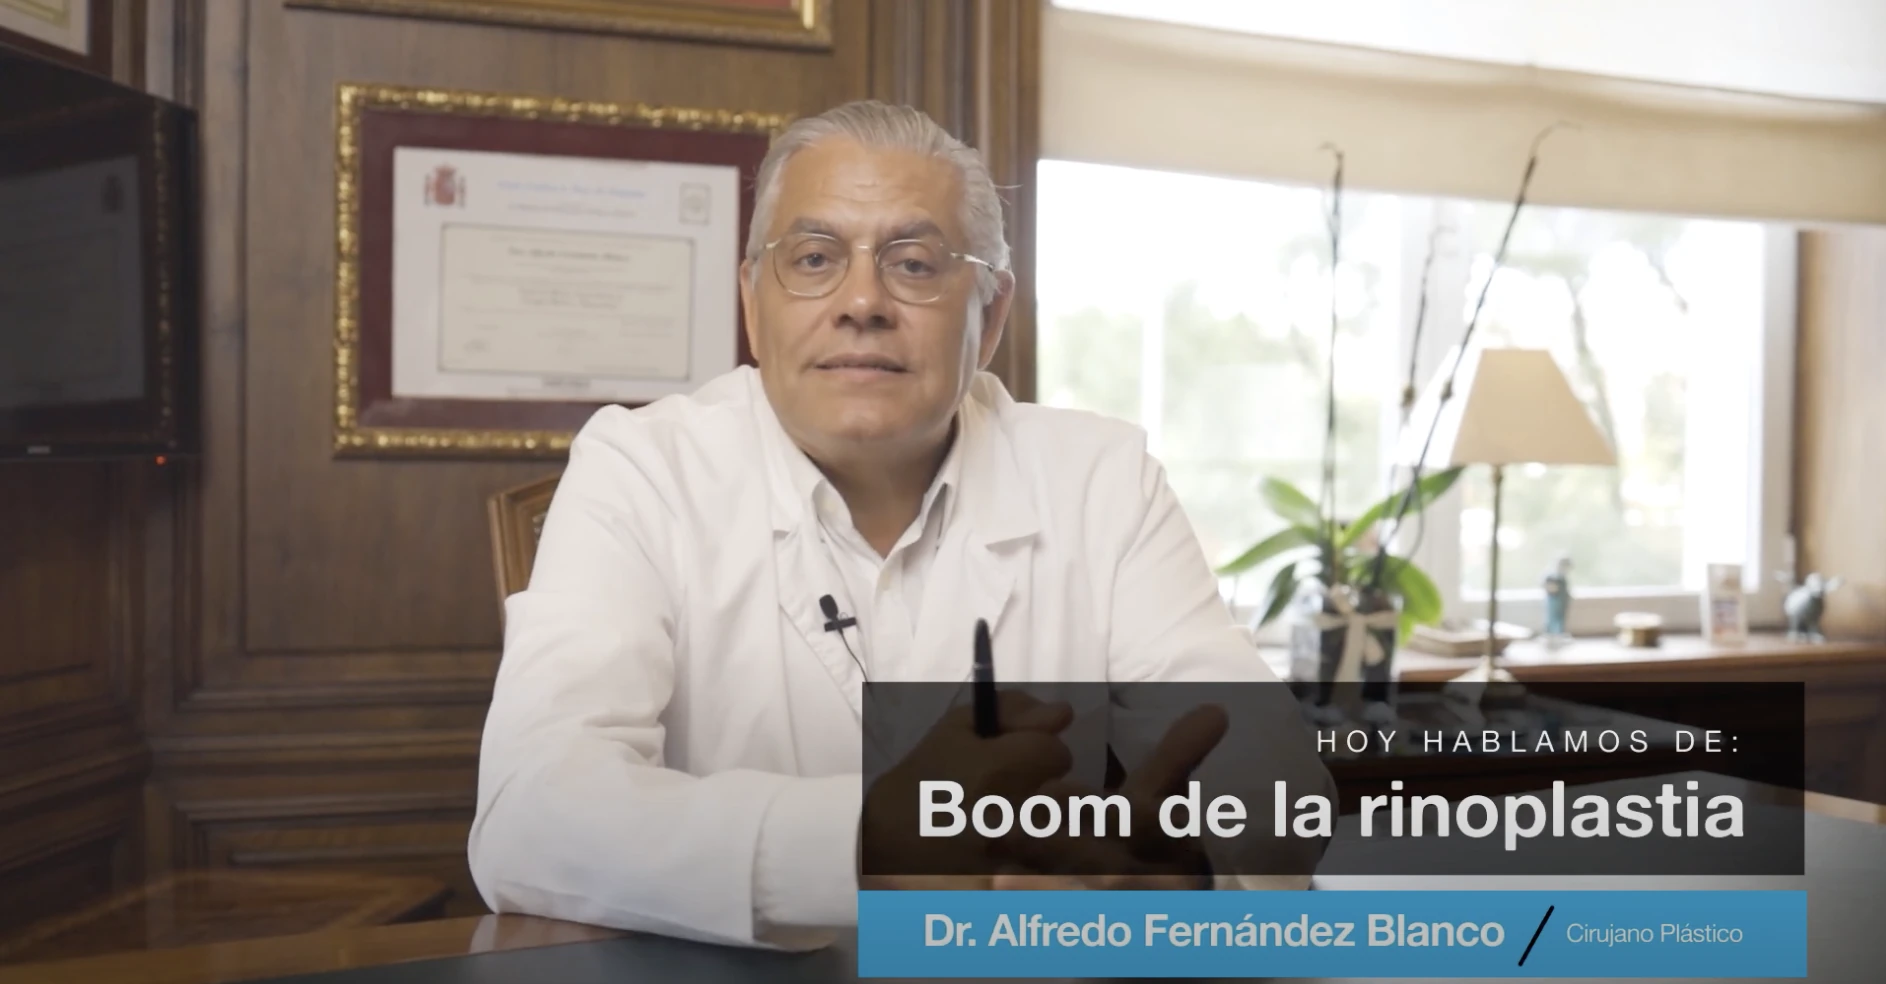 Videoblog acerca del boom de la rinoplastia